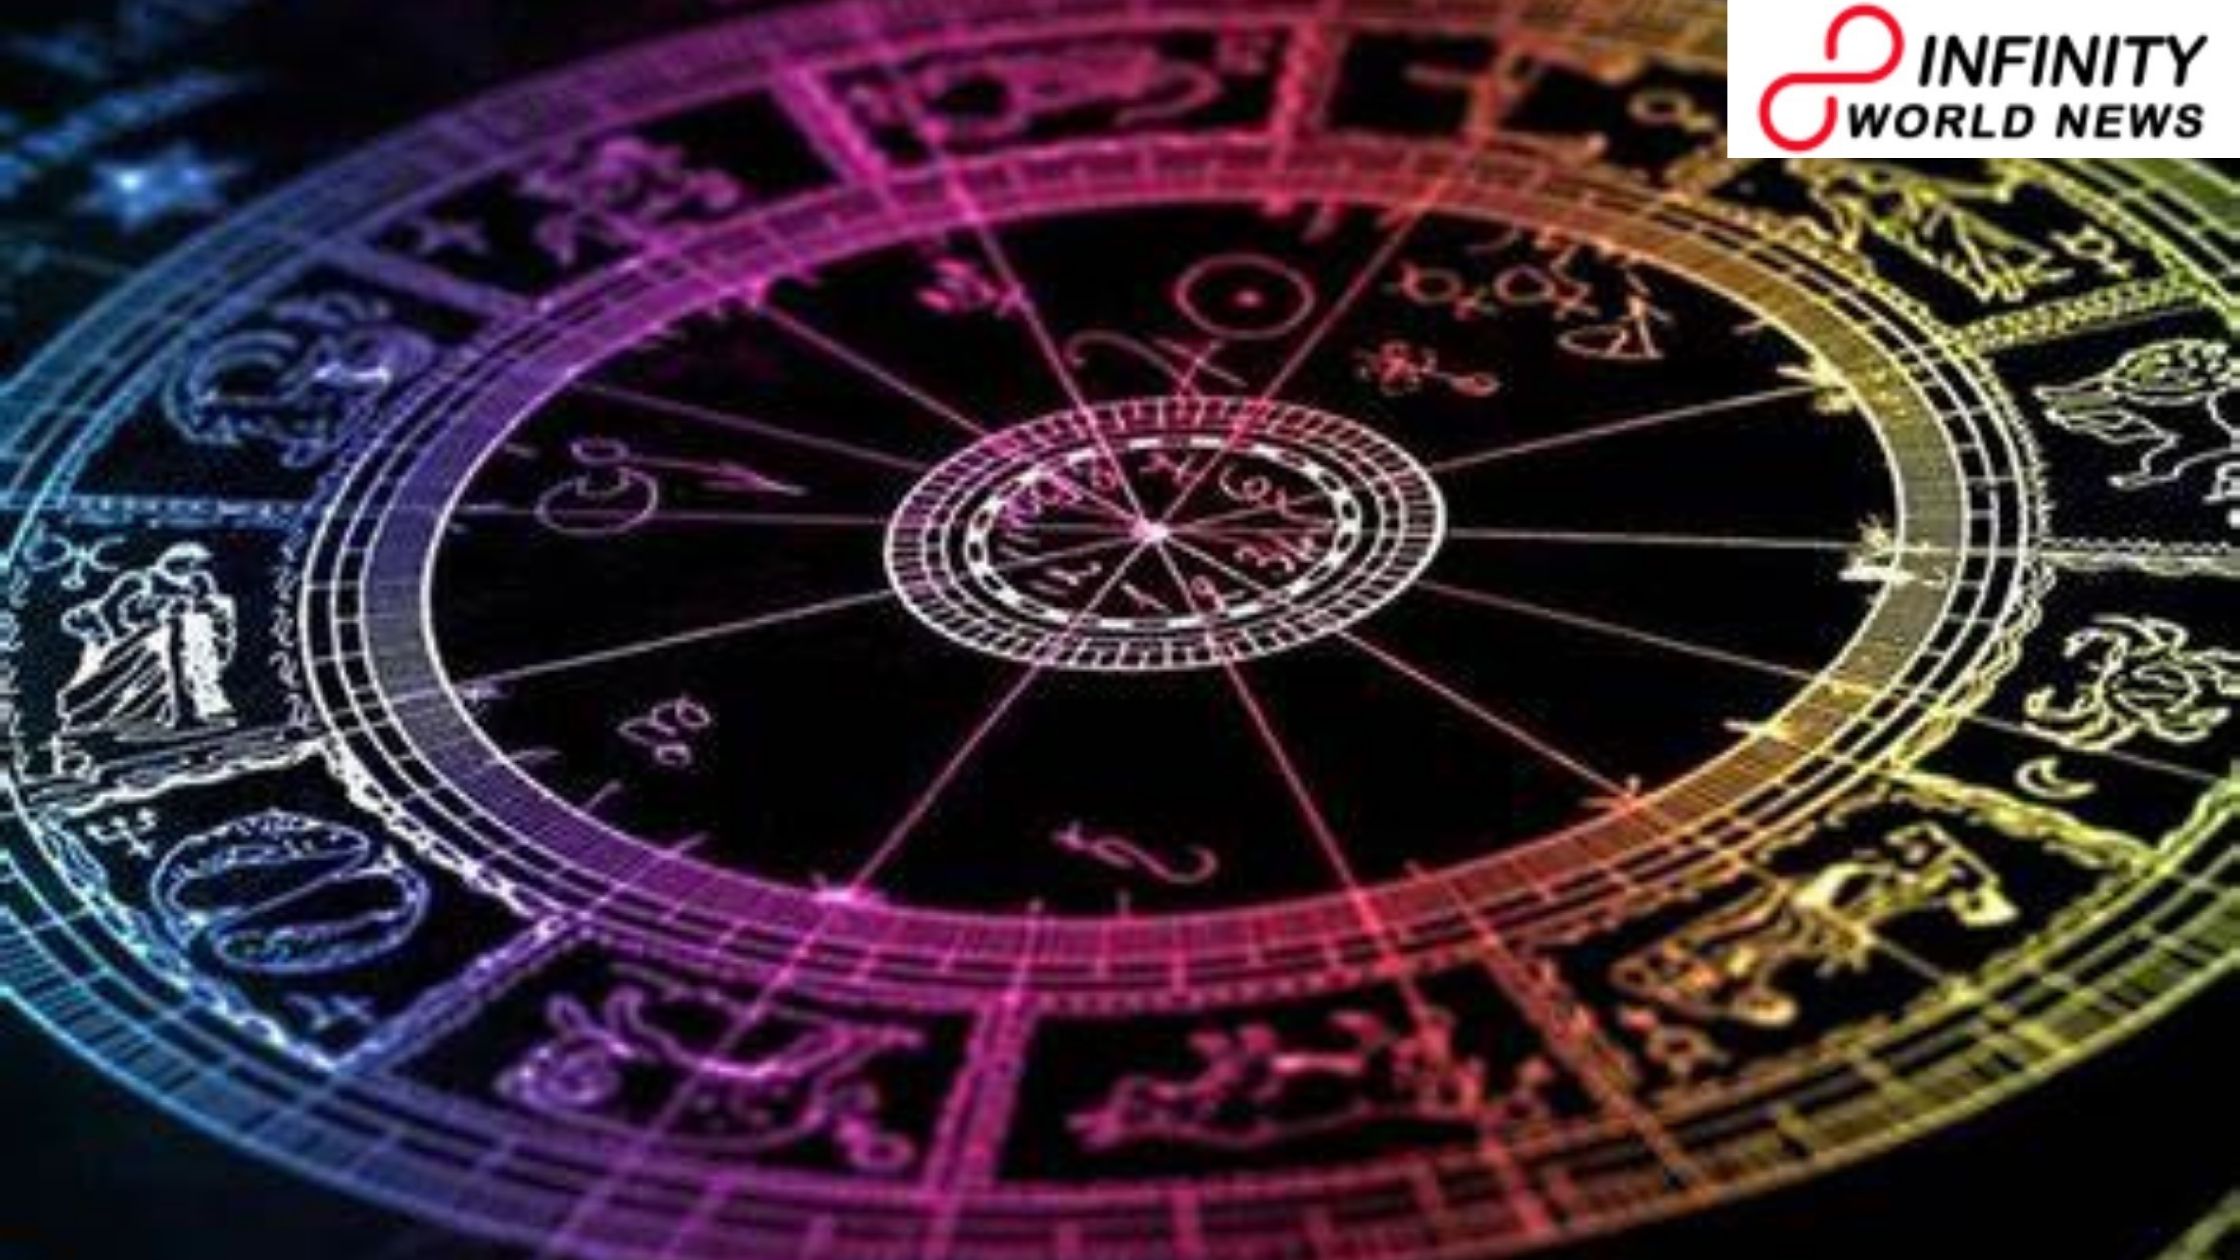 Today Horoscope 20-01-21 | Daily Horoscope